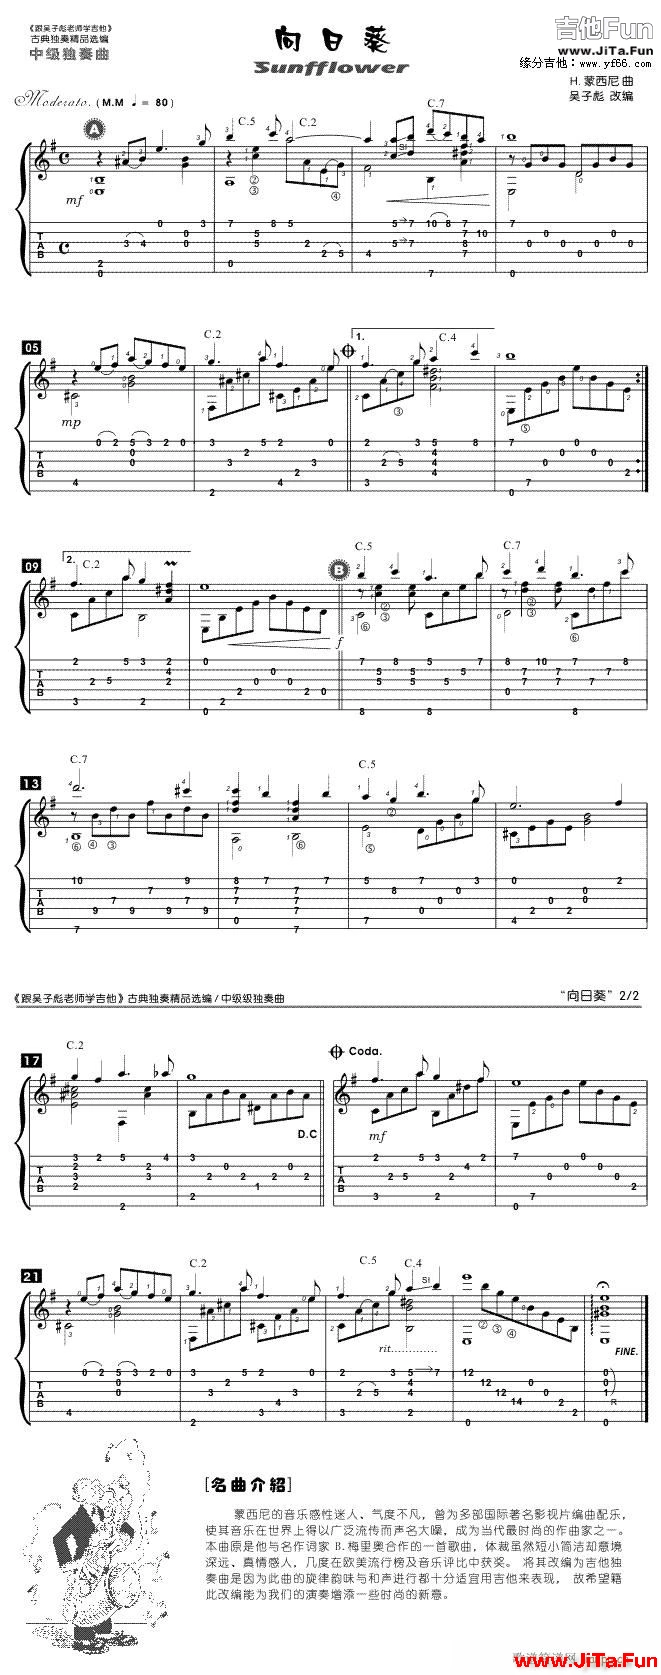 向日葵-吉他(吉他譜)1